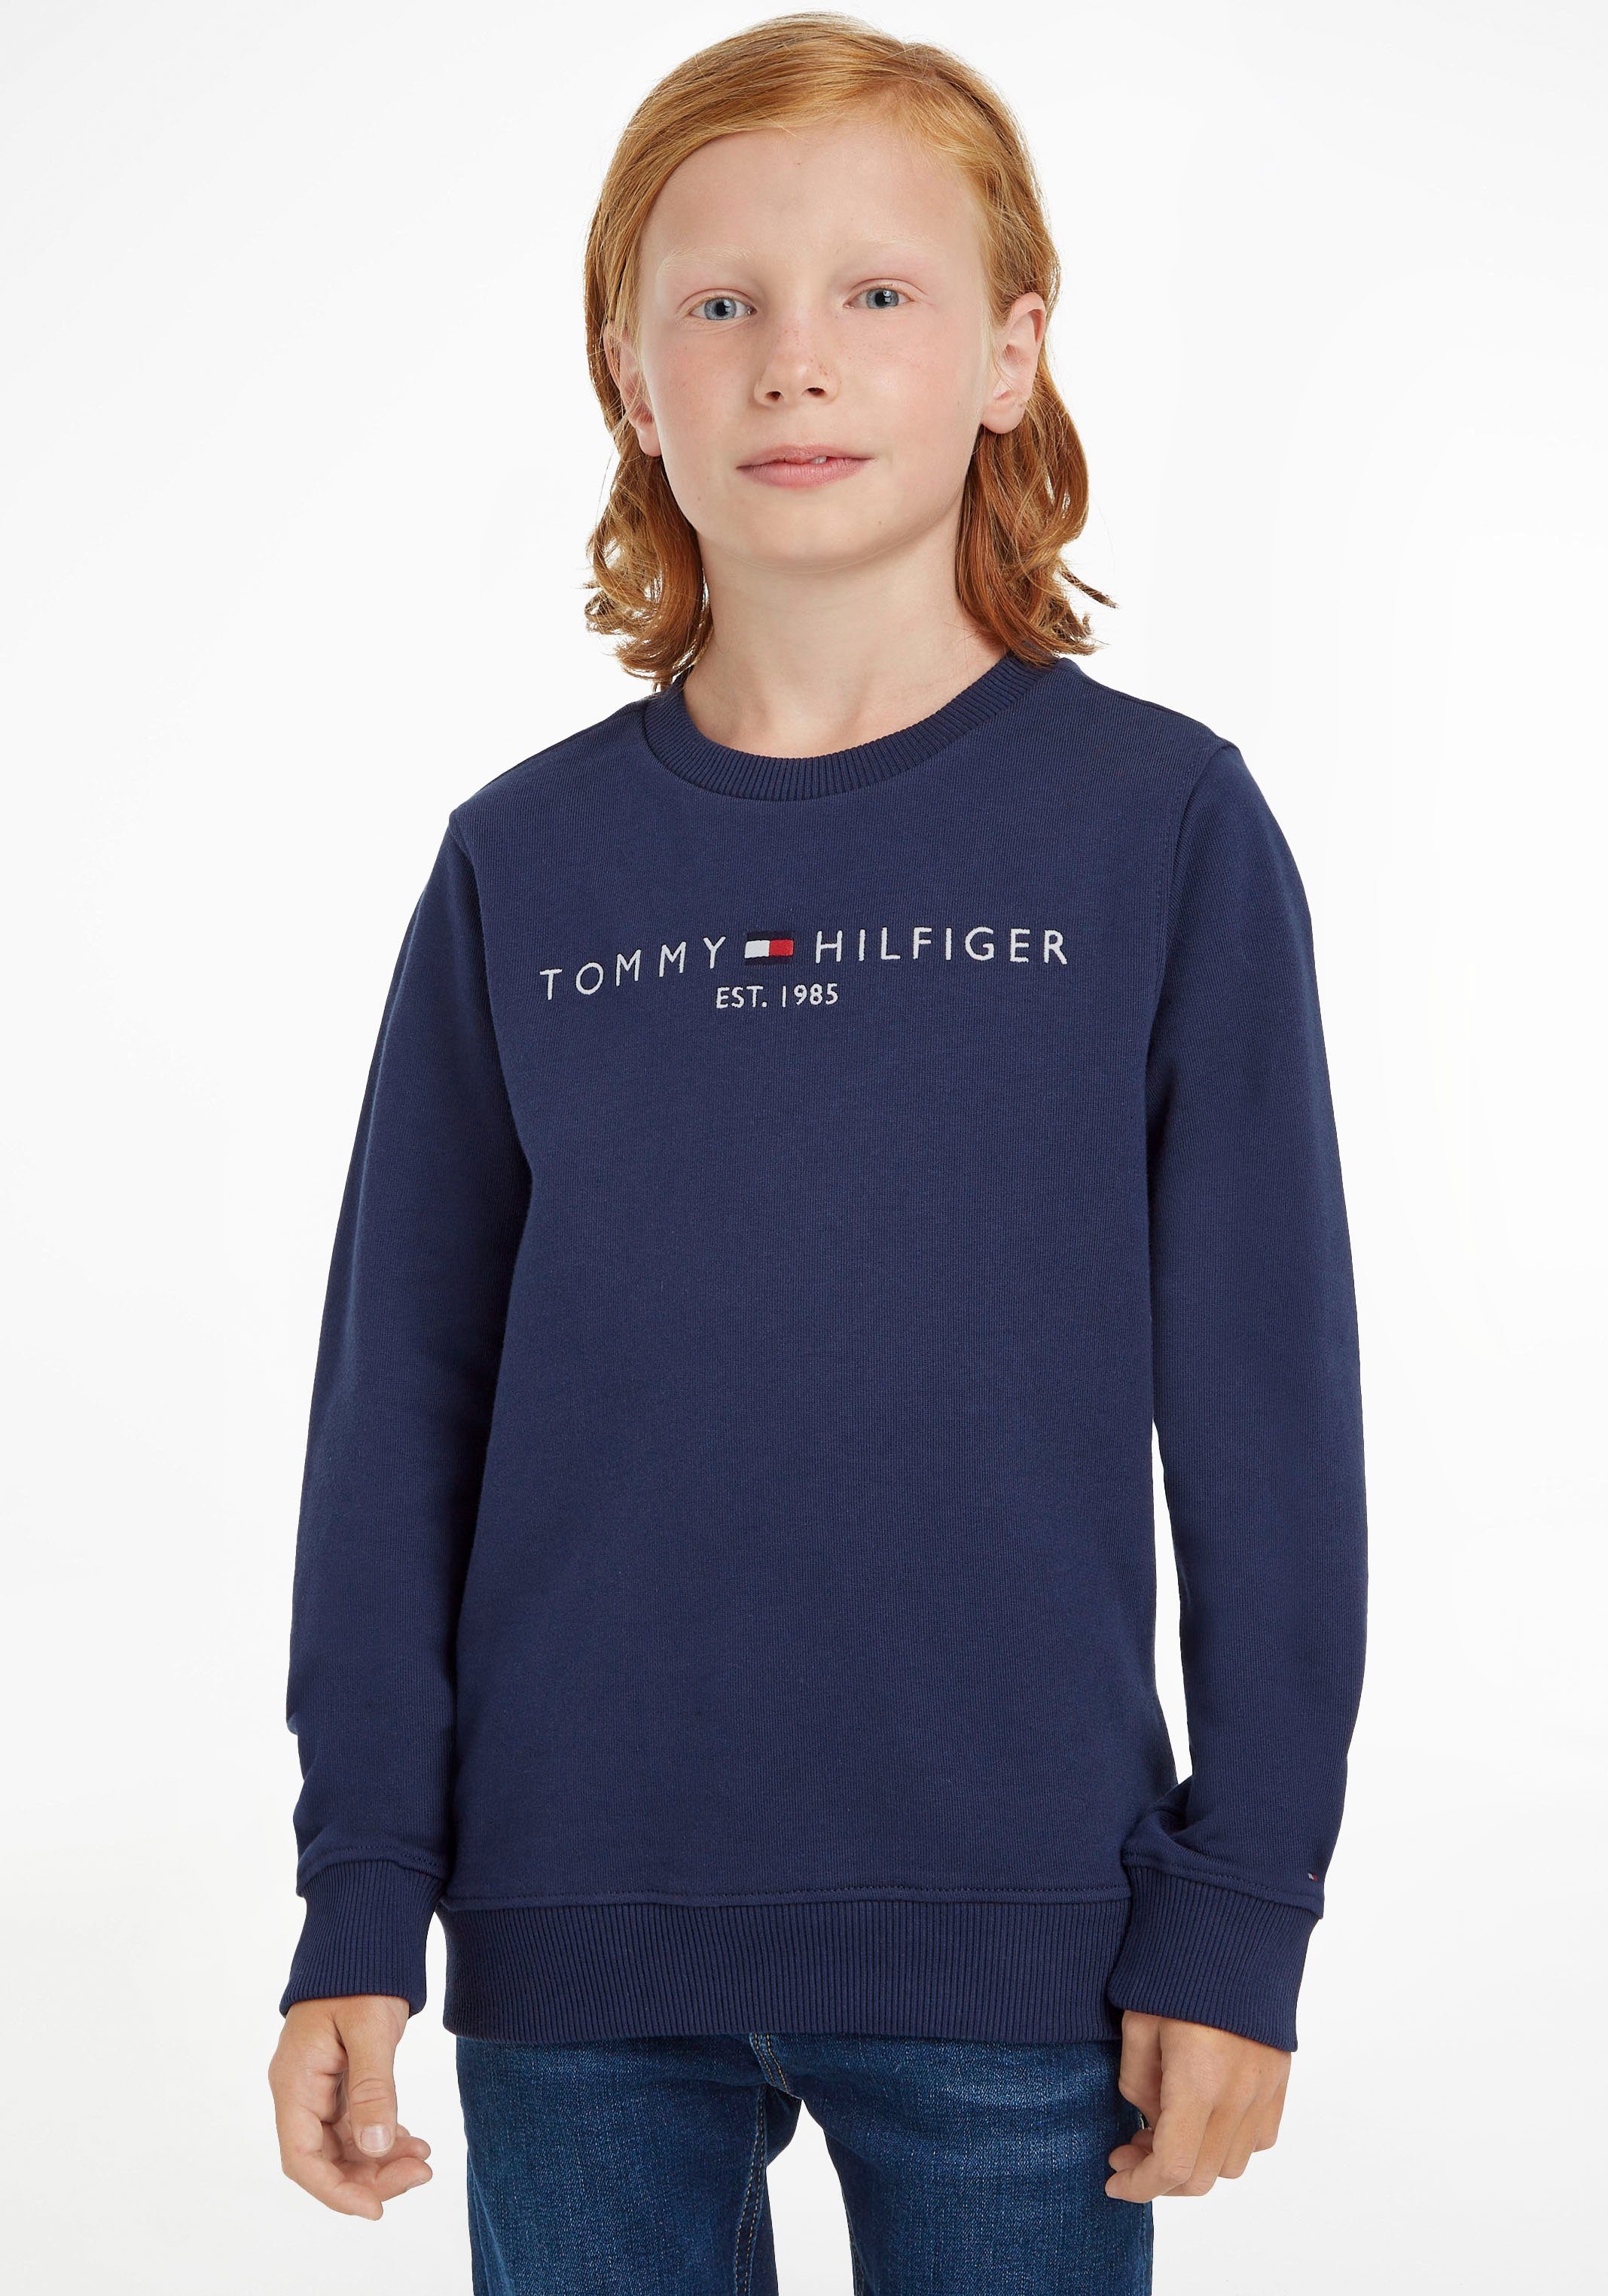 Hilfiger Jungen Junior und ESSENTIAL Mädchen Tommy SWEATSHIRT MiniMe,für Kinder Sweatshirt Kids